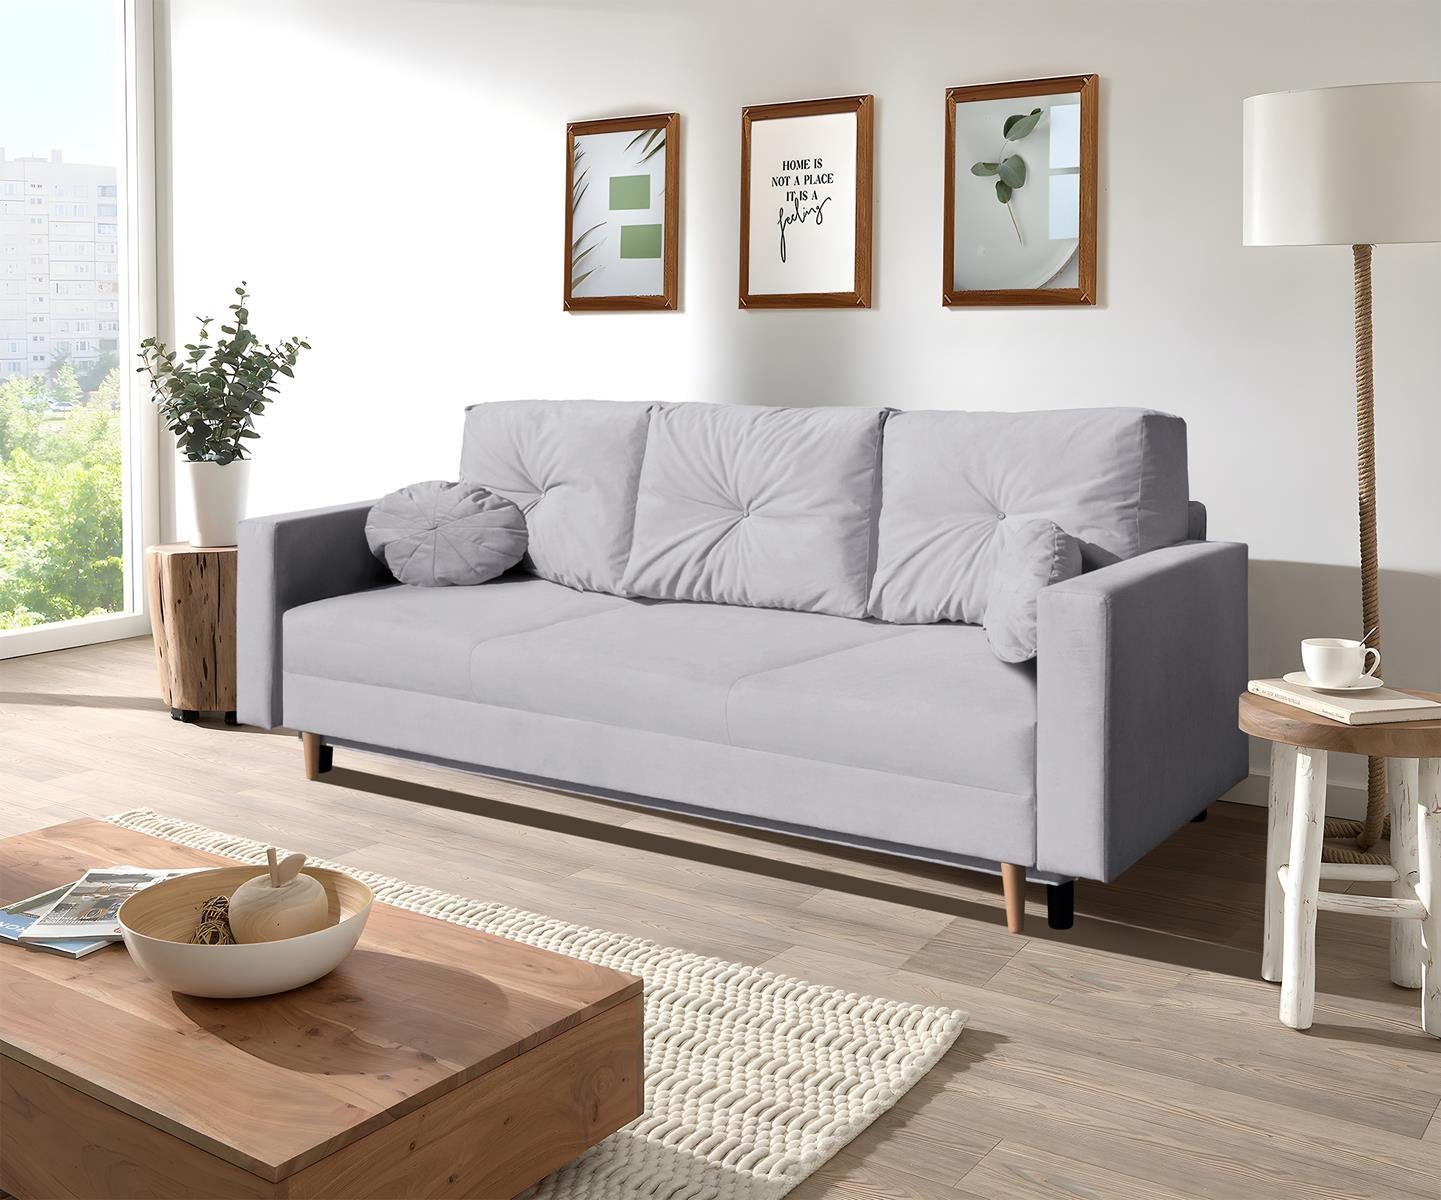 Beautysofa 3-Sitzer MILAN, skandinavisches Design, Wellenunterfederung, Bettkasten, Holzbeine, 3-Sitzer Sofa mit Relaxfunktion Hellgrau (trinity 32)